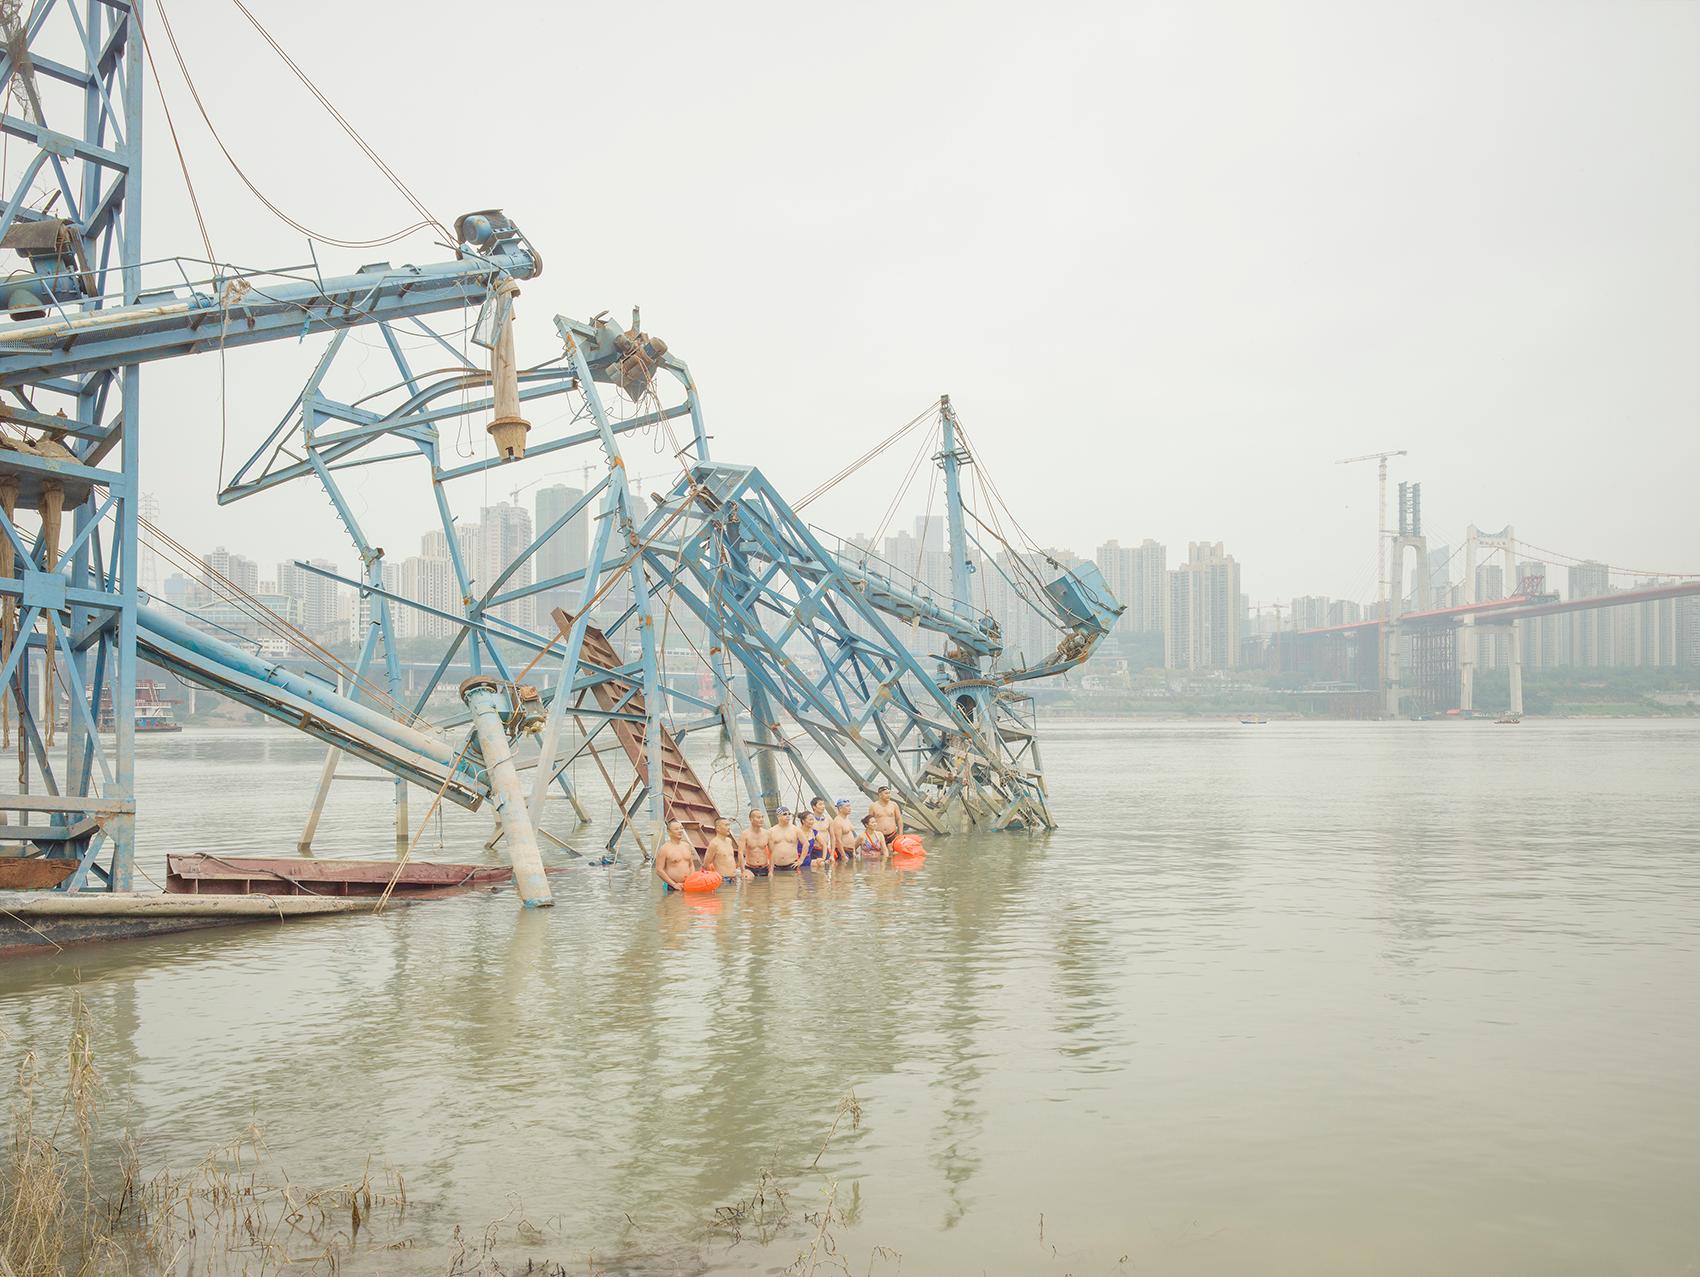 Verlassene Boote, 2017 - Zhang Kechun (Farbfotografie der Landschaft)
Signiert und nummeriert auf der Rückseite
Archivierungs-Pigmentdruck

Erhältlich in zwei Größen:
39 1/4 x 31 1/2 Zoll, Auflage: 7 + 1 AP
59 x 47 Zoll, Auflage: 3 + 1 AP

Zhang